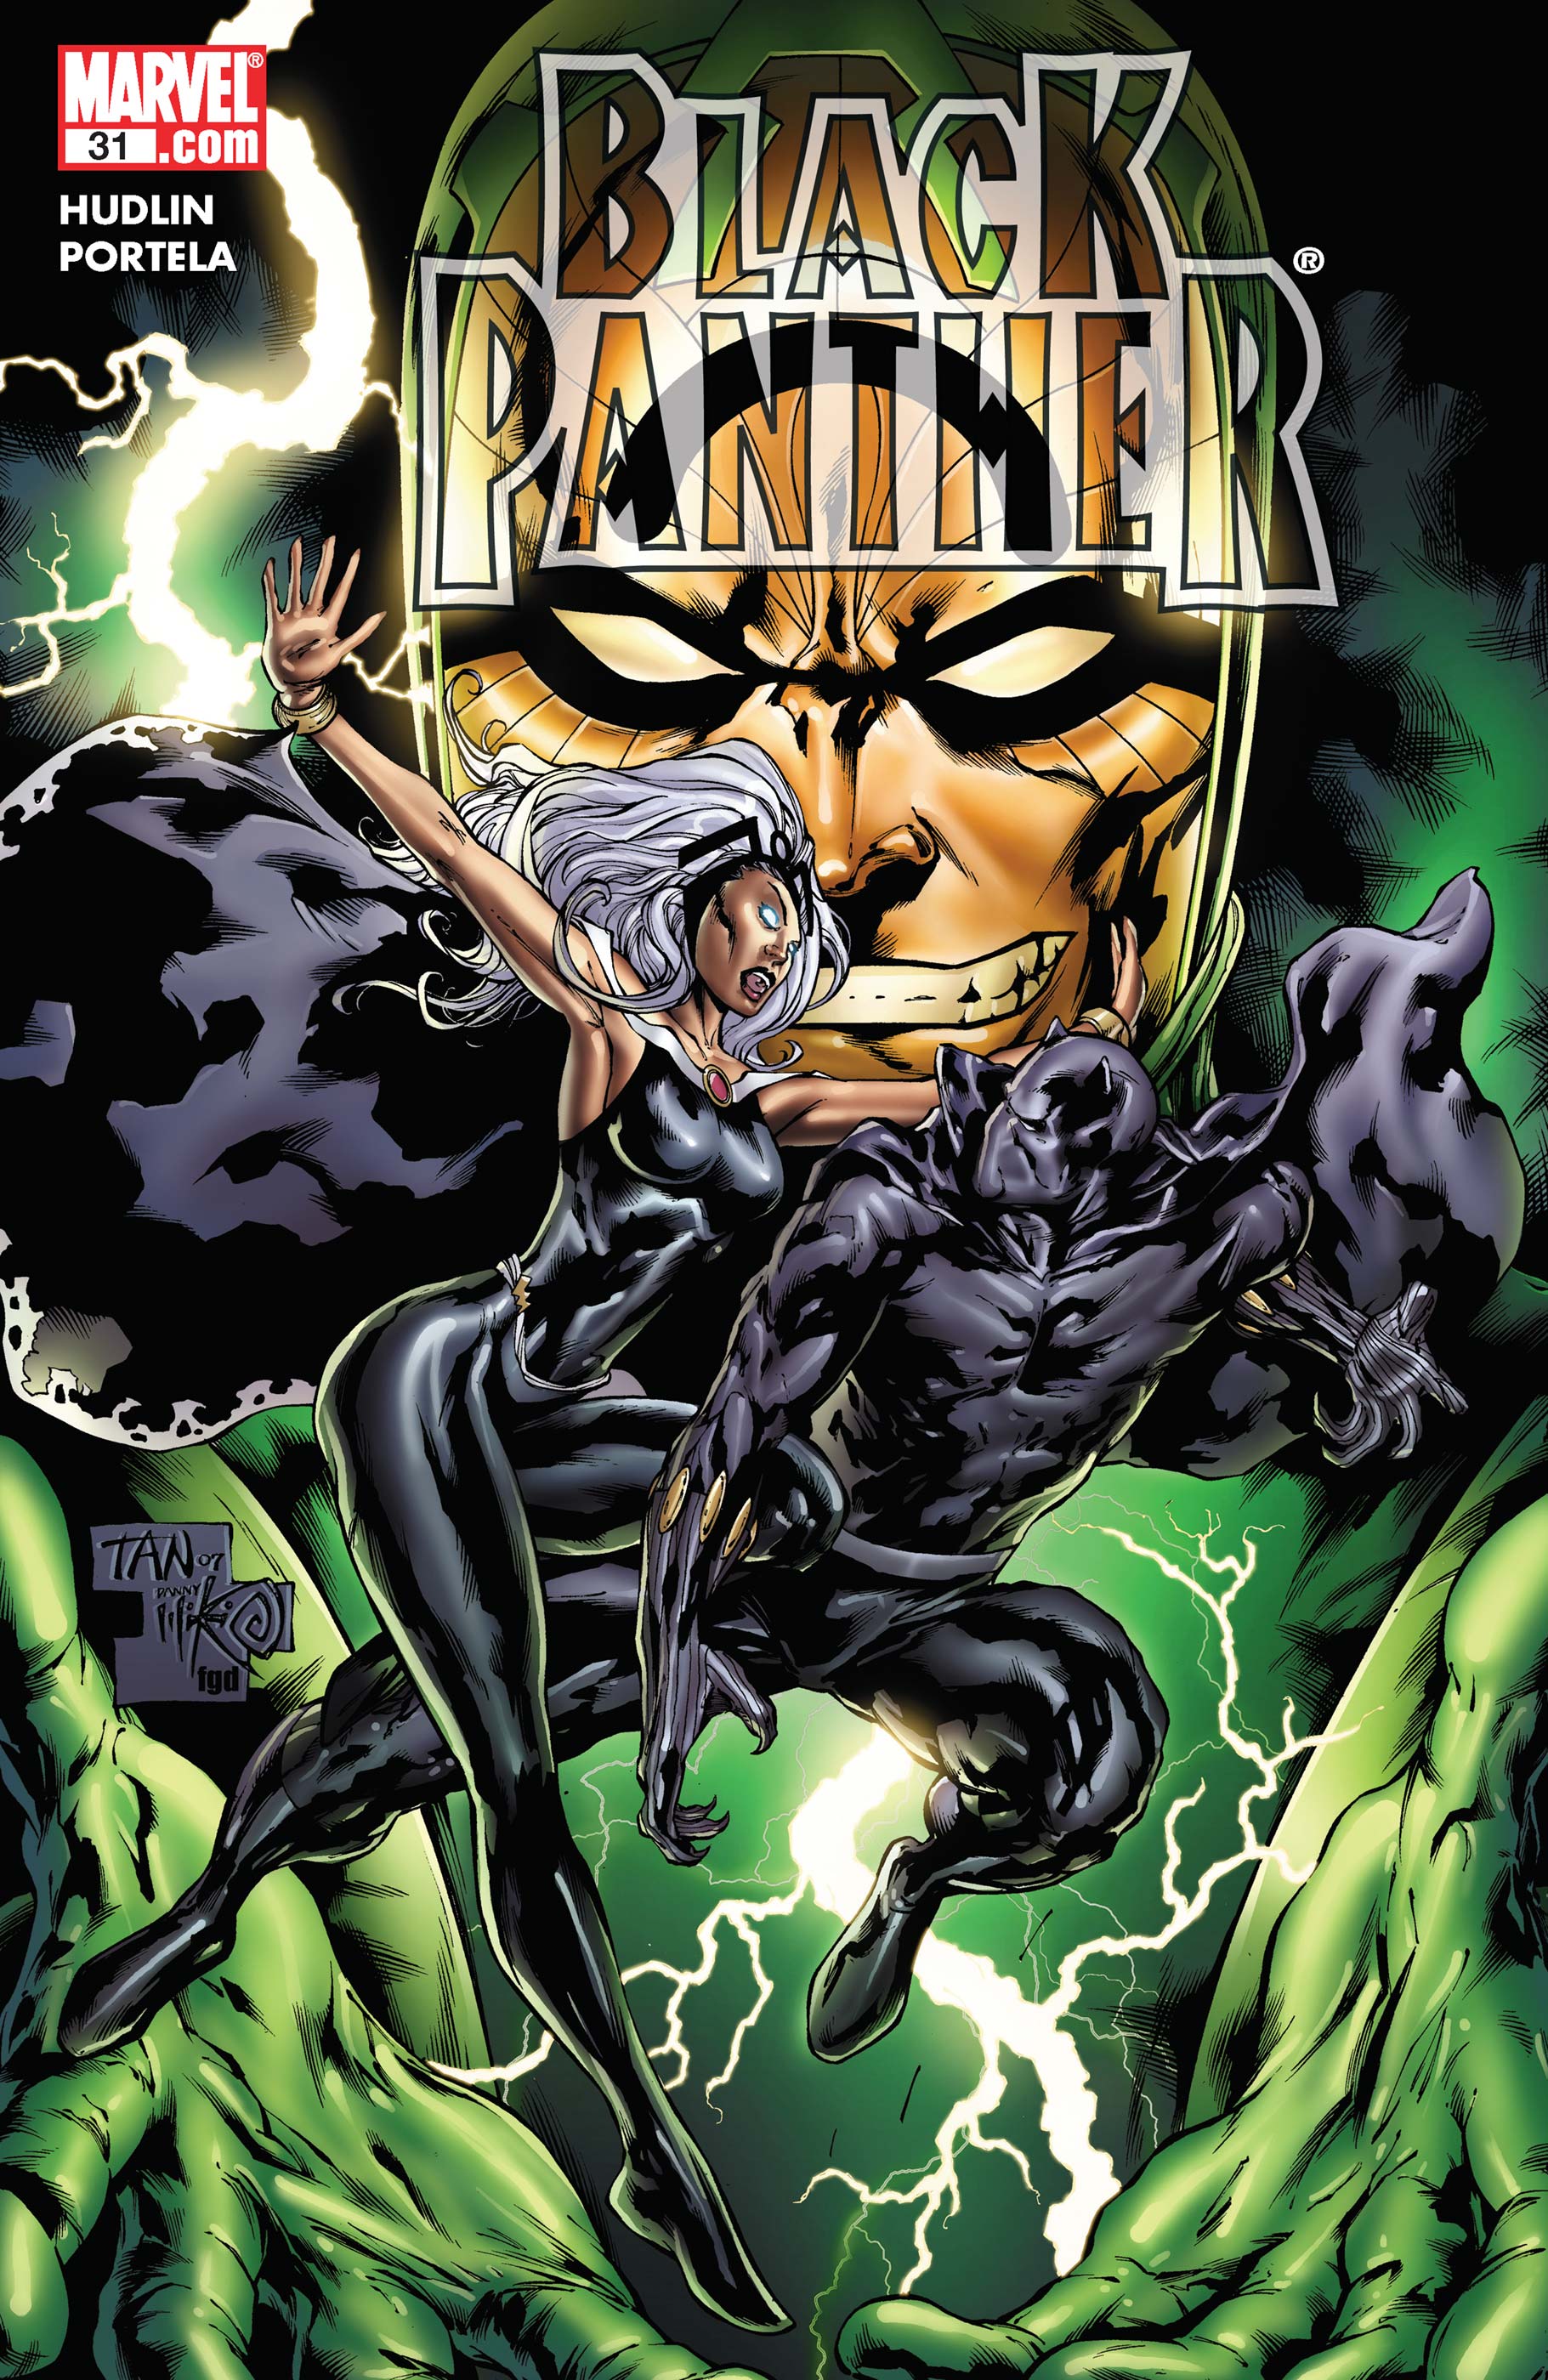 Black Panther (2005) #31